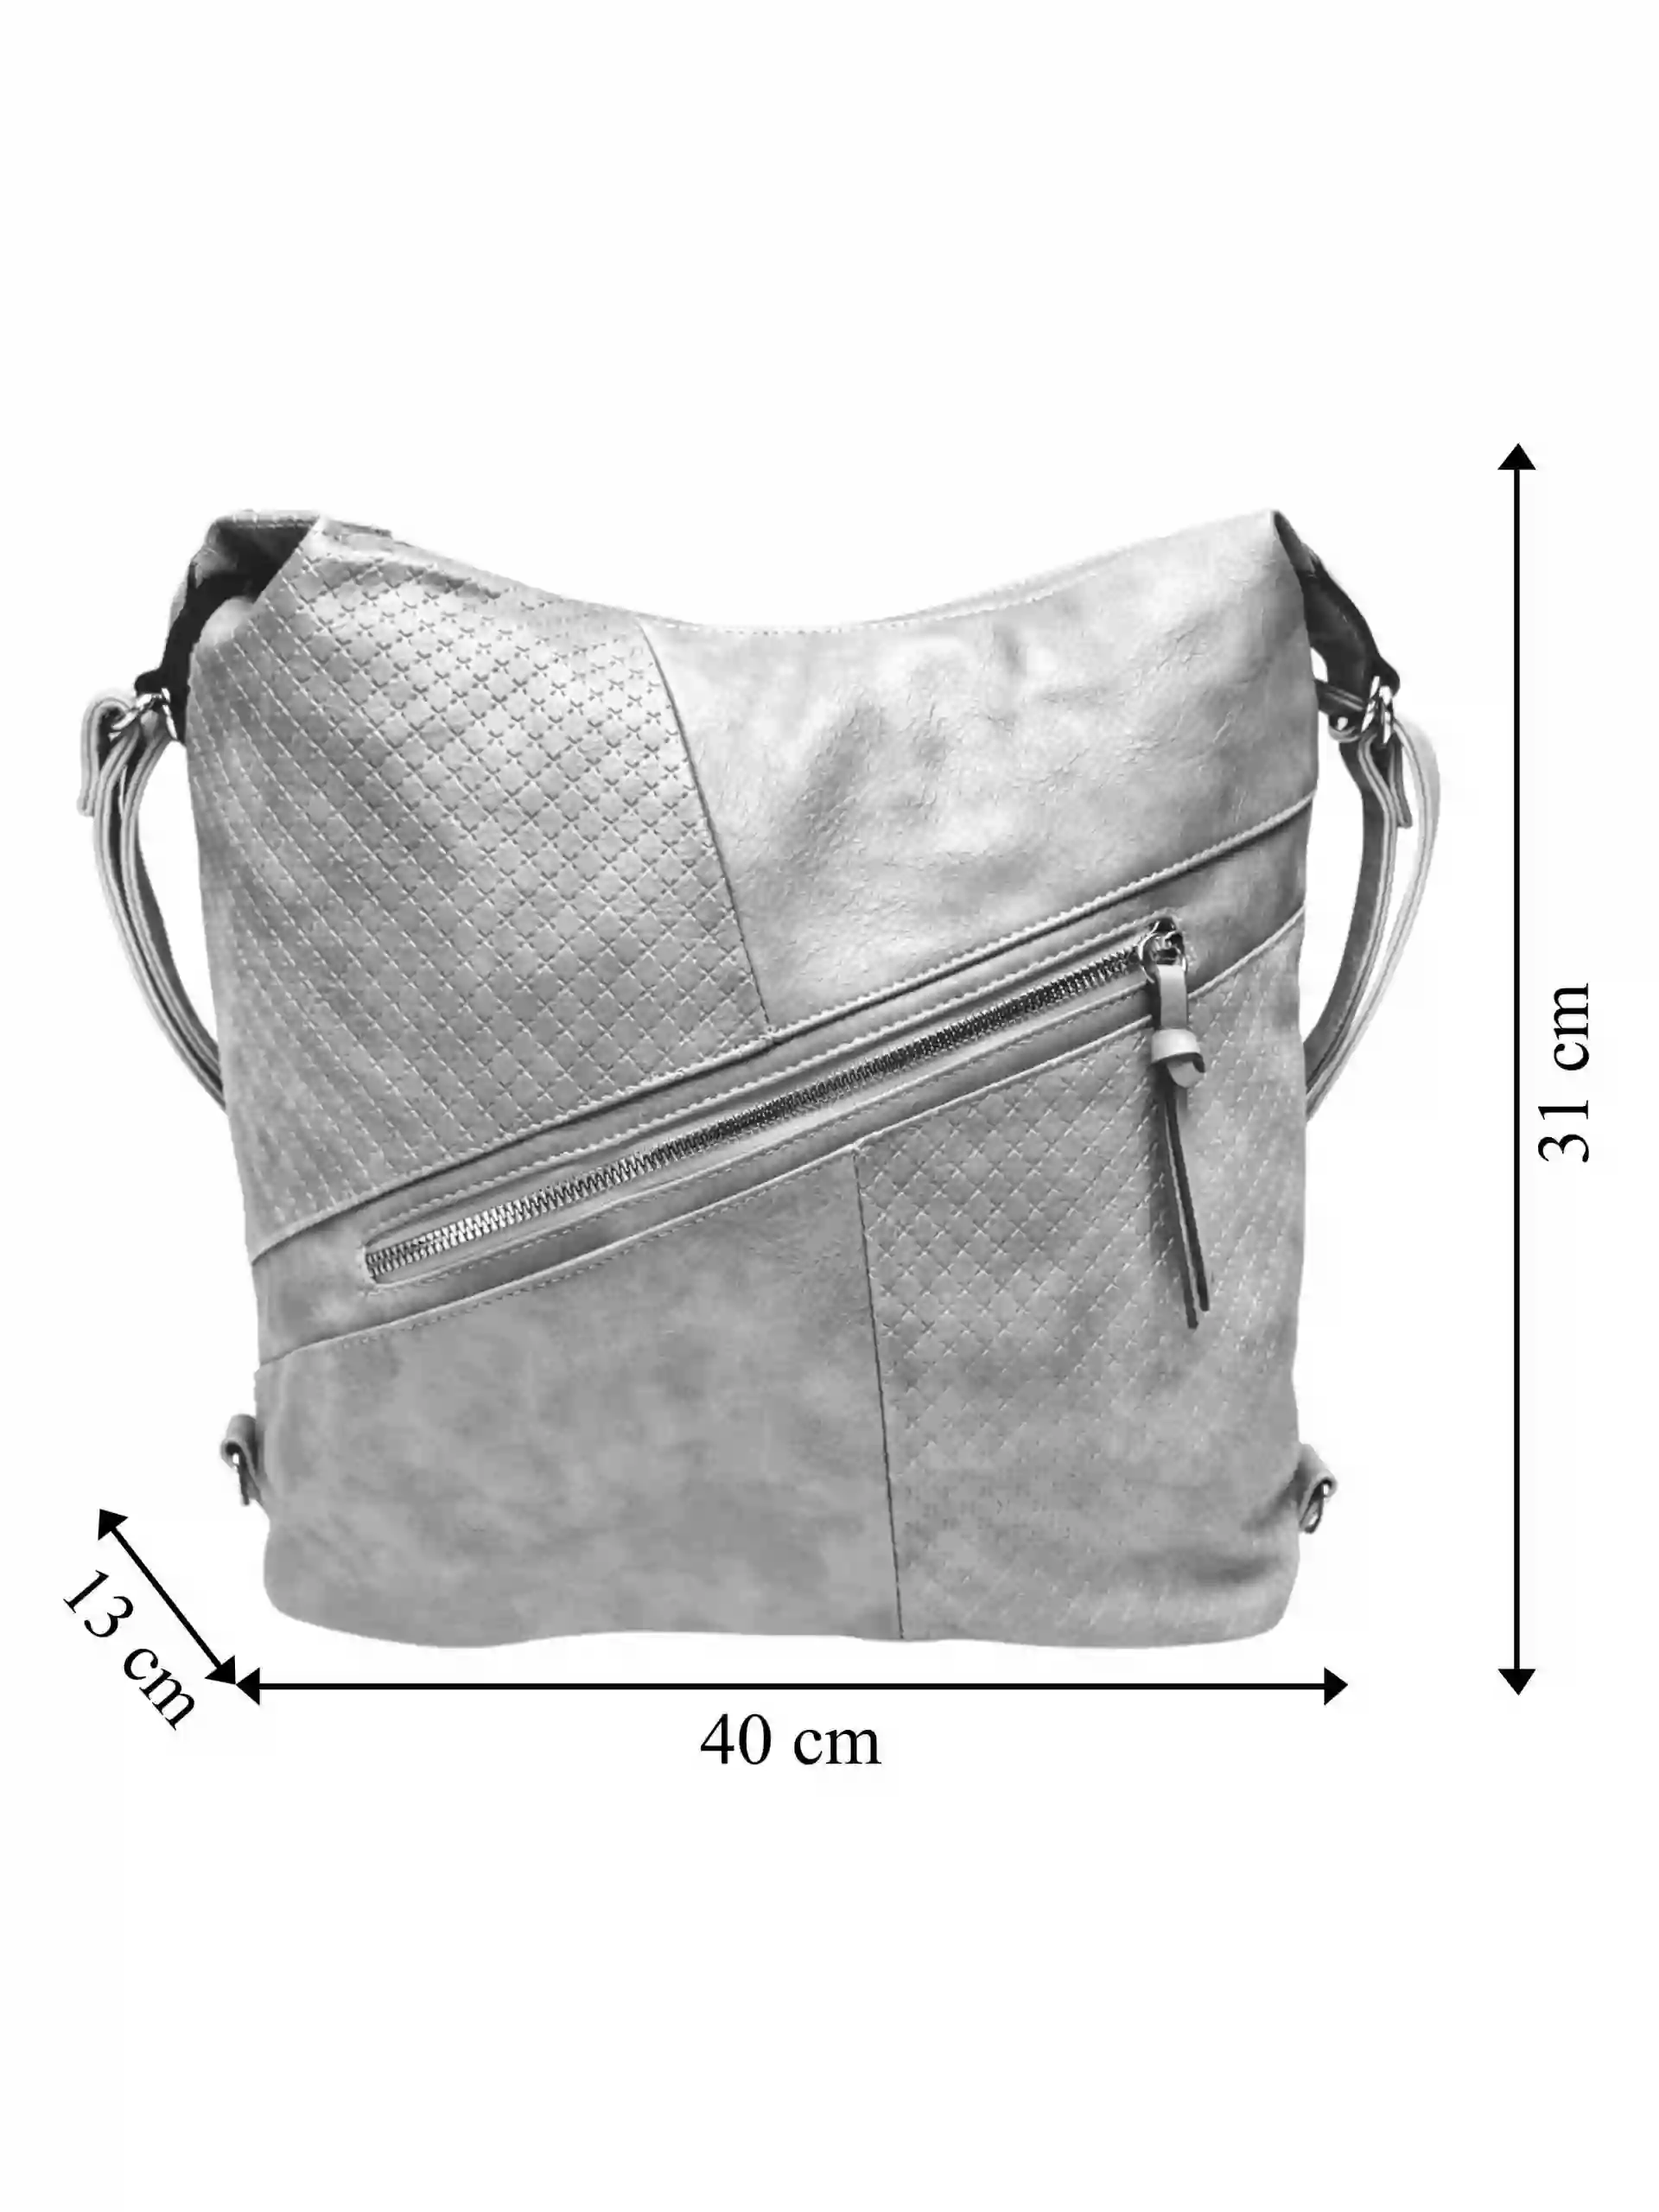 Velký světle šedý kabelko-batoh s šikmou kapsou, Tapple, H18077N+, přední strana kabelko-batohu 2v1 s rozměry